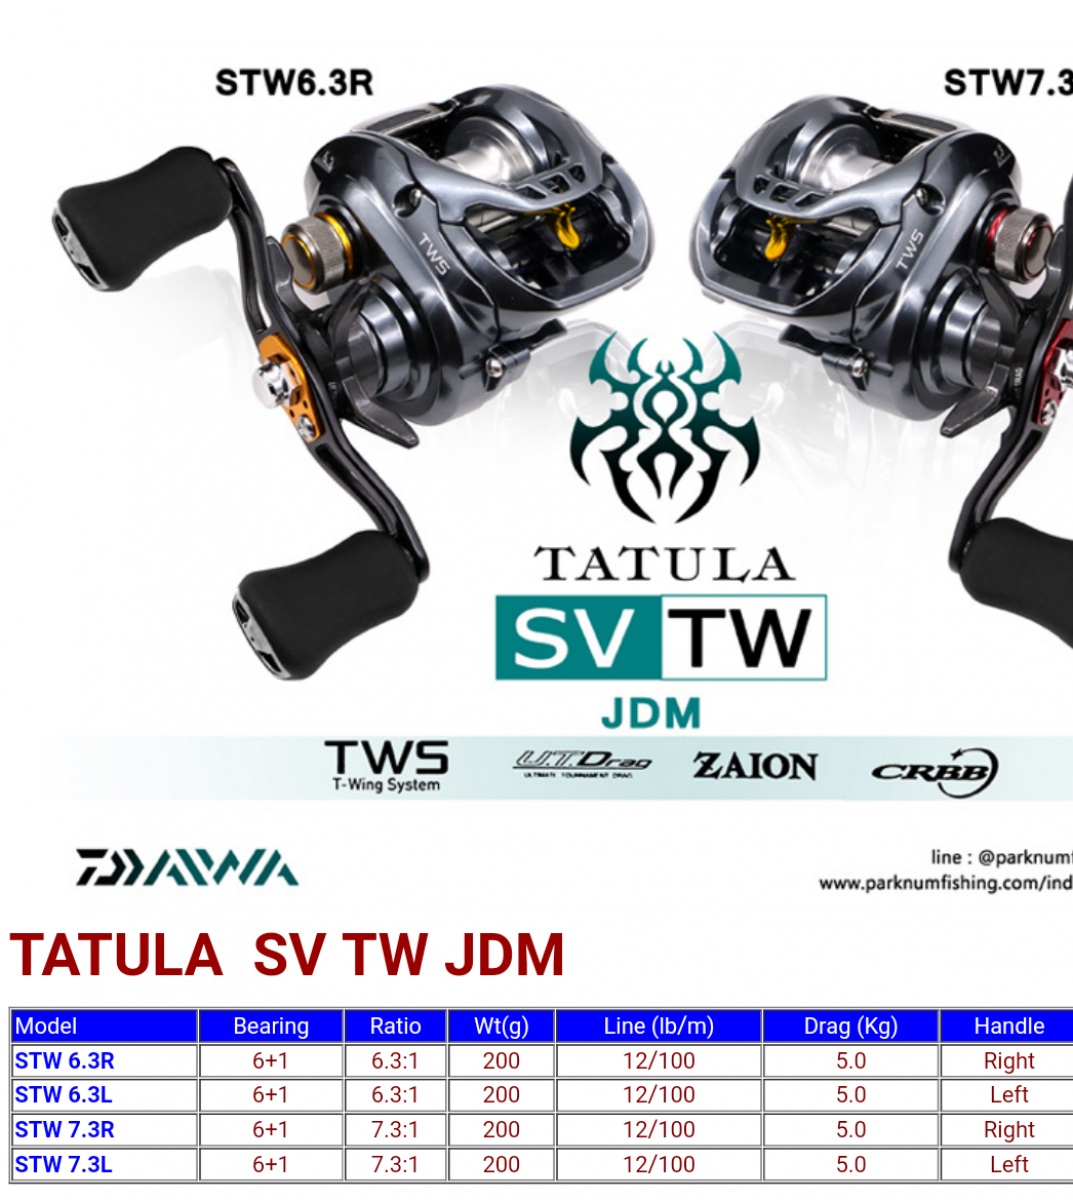 สงสัยครับ TATULA SV TW ตัว JDM กับตัว เมกา ต่างกันตรงไหนบ้าง